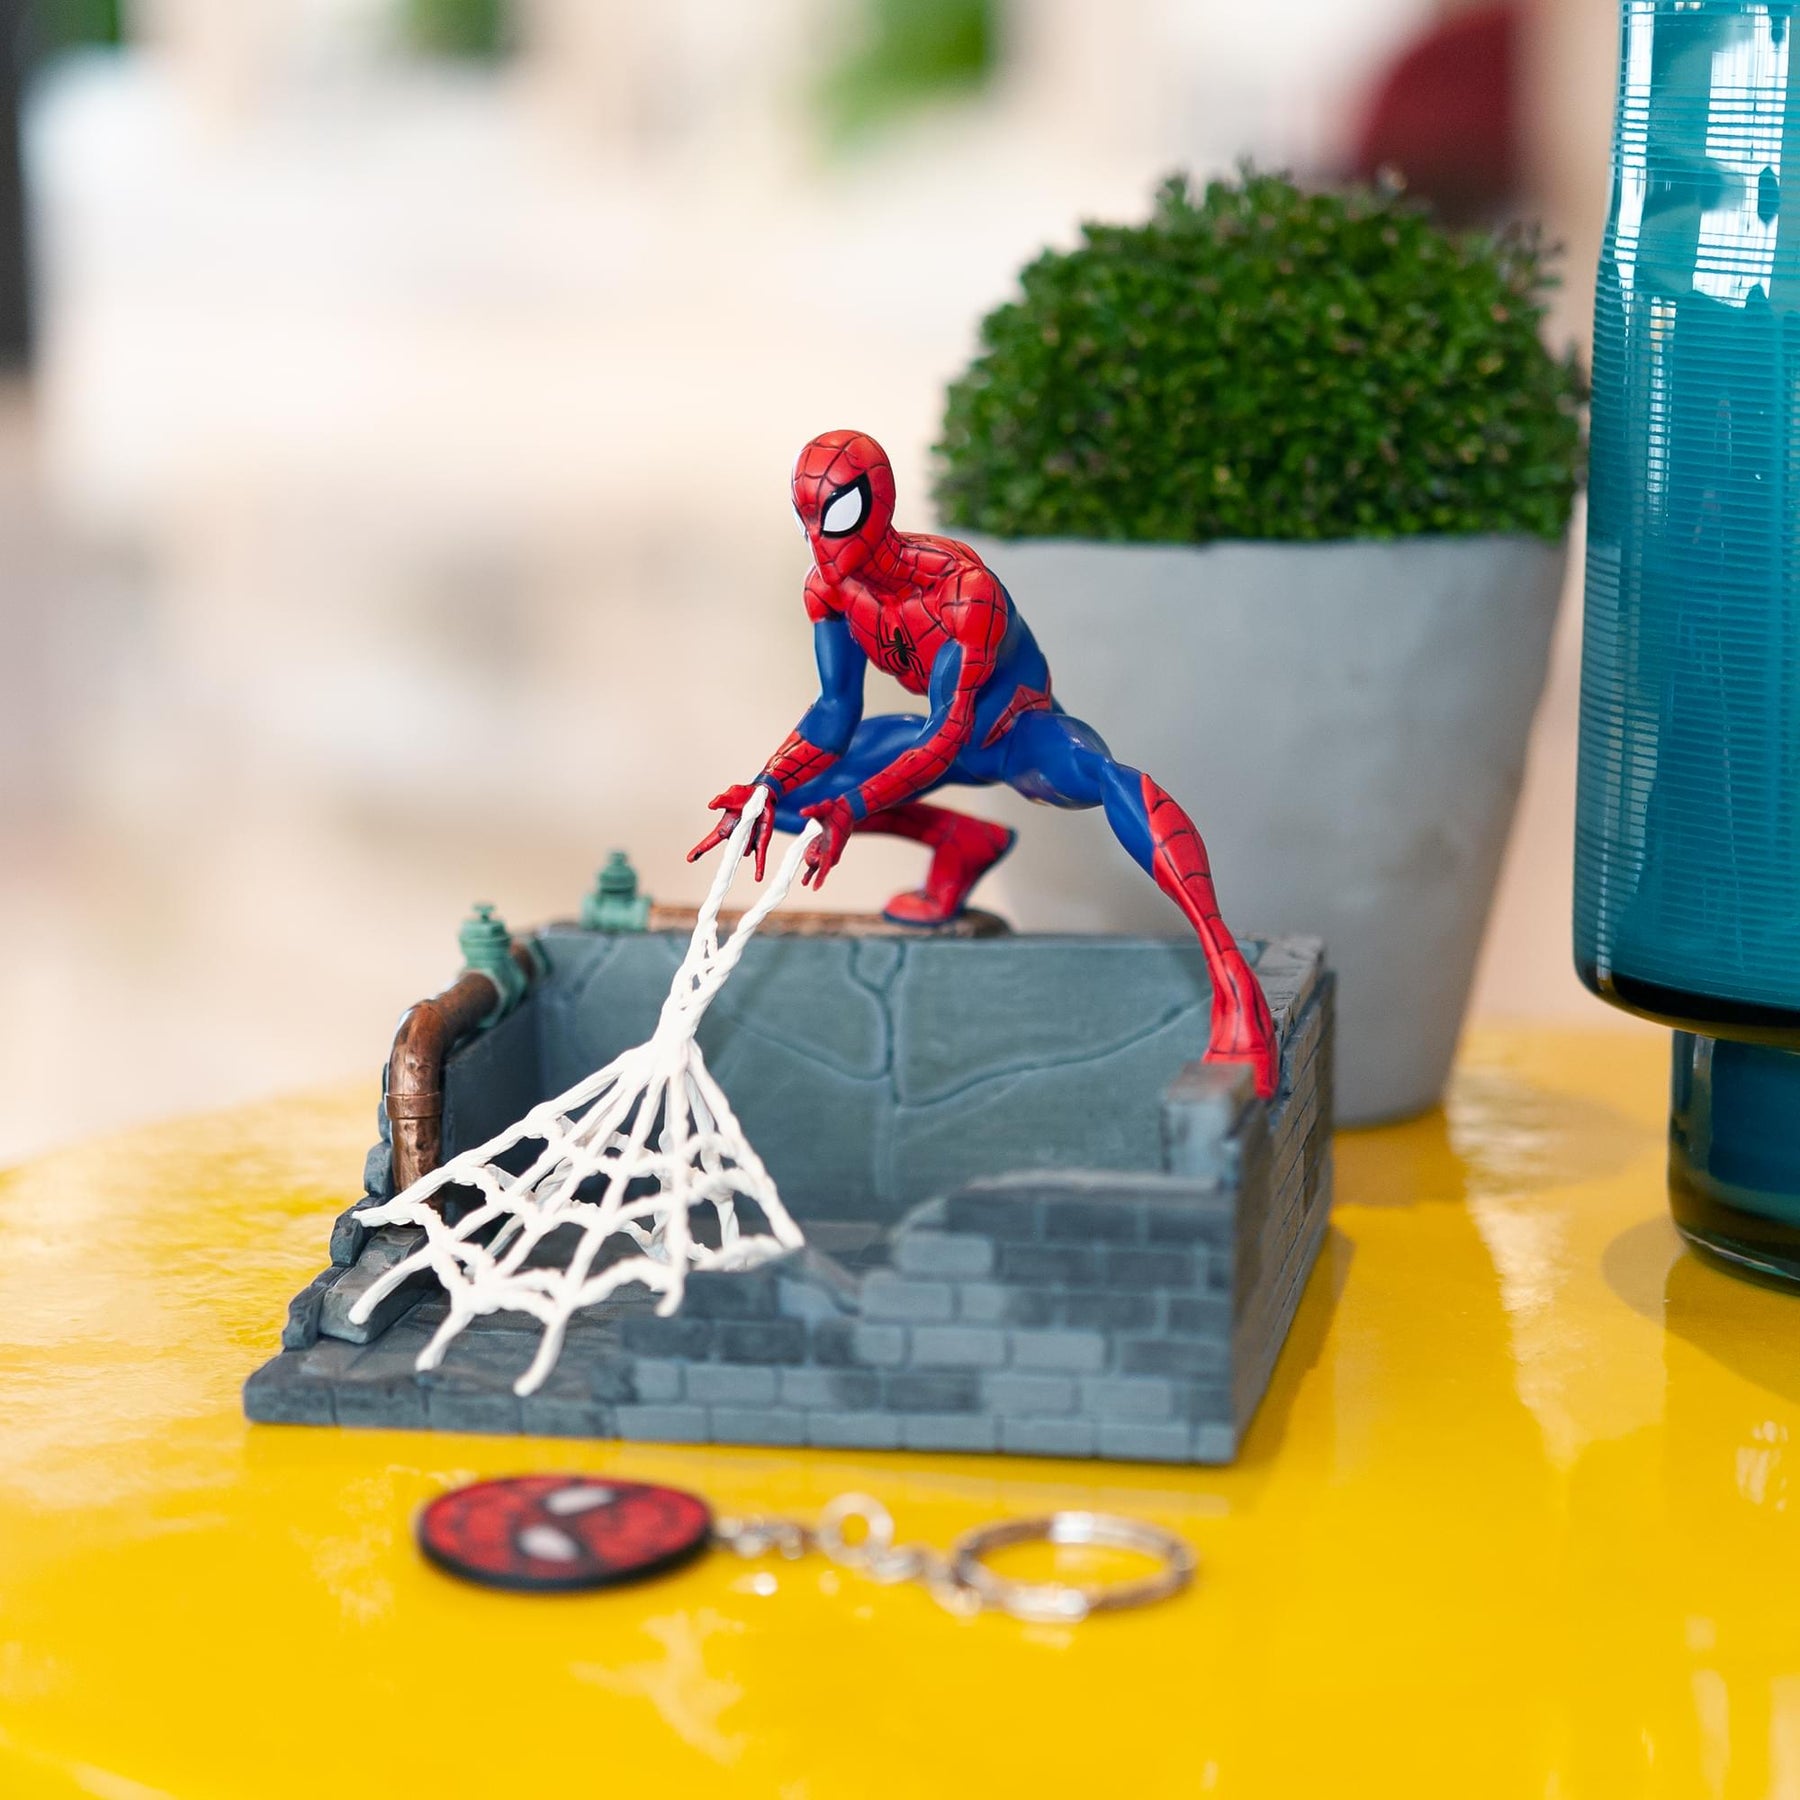 Marvel Spider-Man Finders Keypers Statue | Official Spider-Man Key Holder Figure